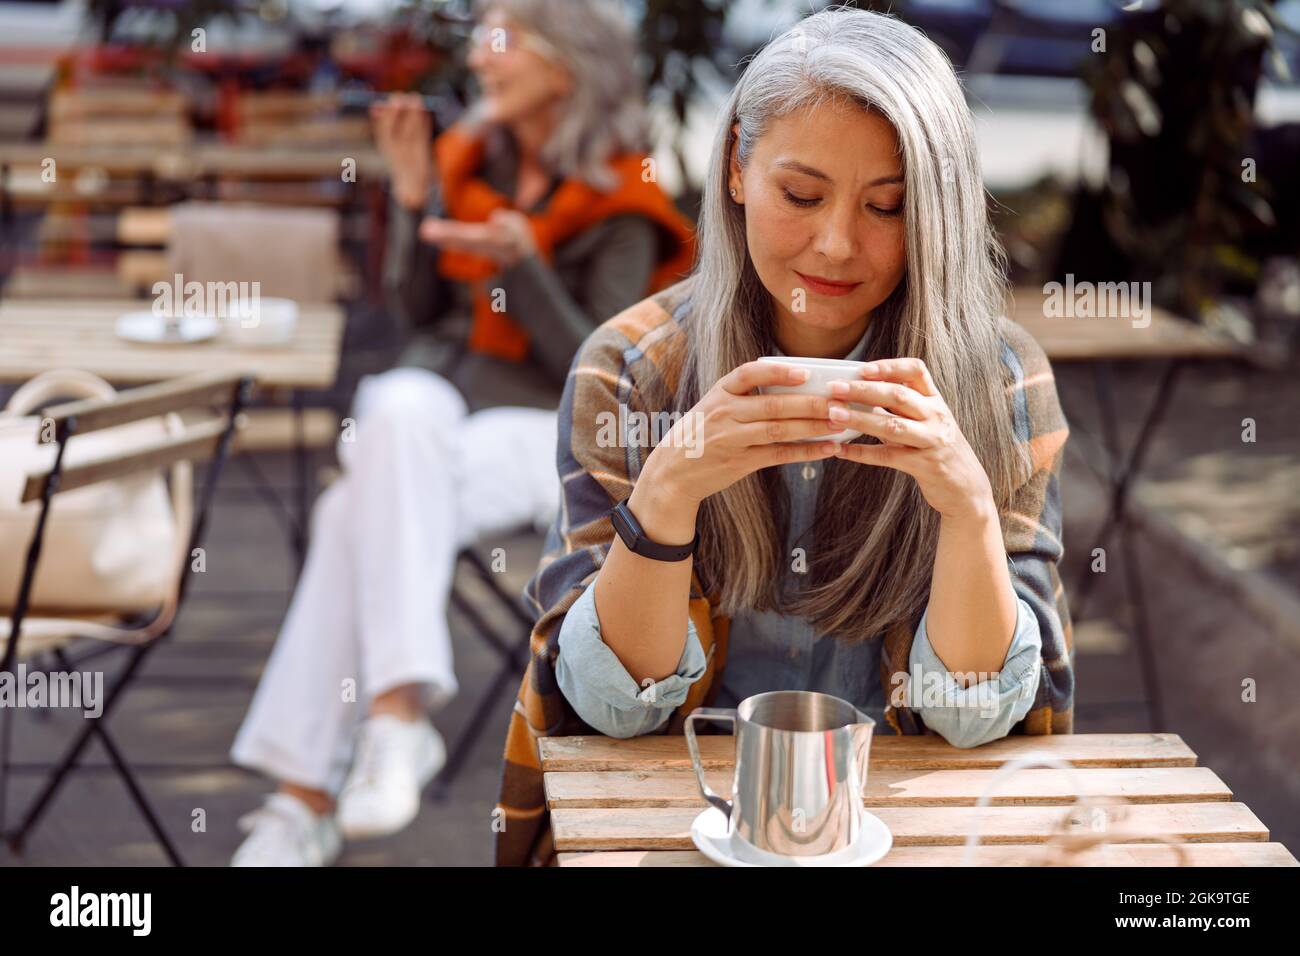 Ältere Cafe-Gäste, konzentrieren sich auf eine hübsche silberhaarige Dame, die eine Tasse Getränk hält Stockfoto